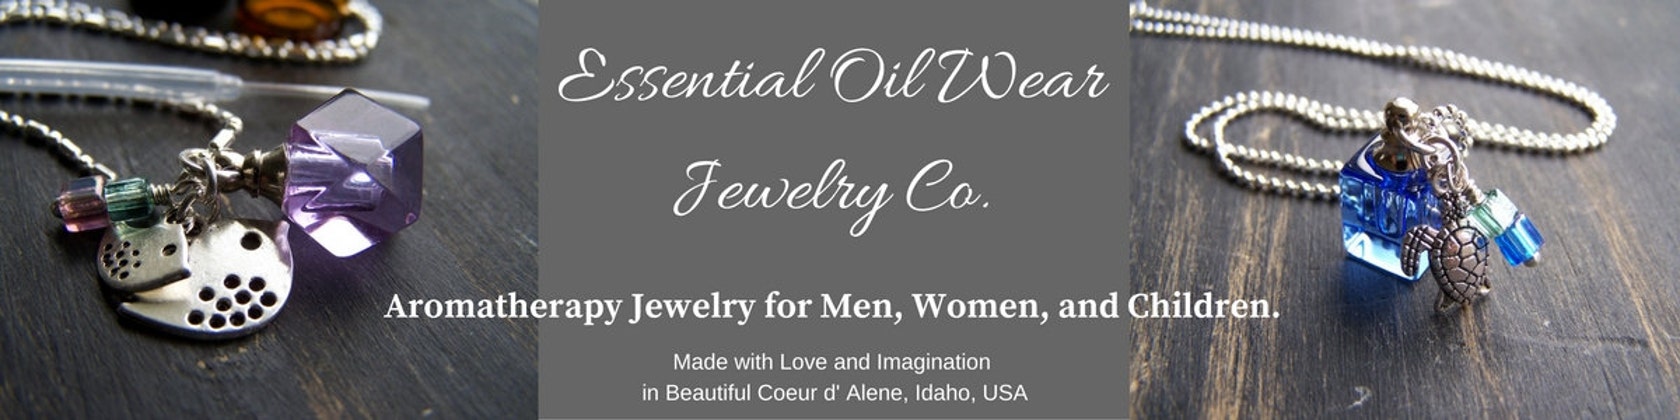 Essential Oil Wear Jewelry Co. by EssentialOilWear on Etsy